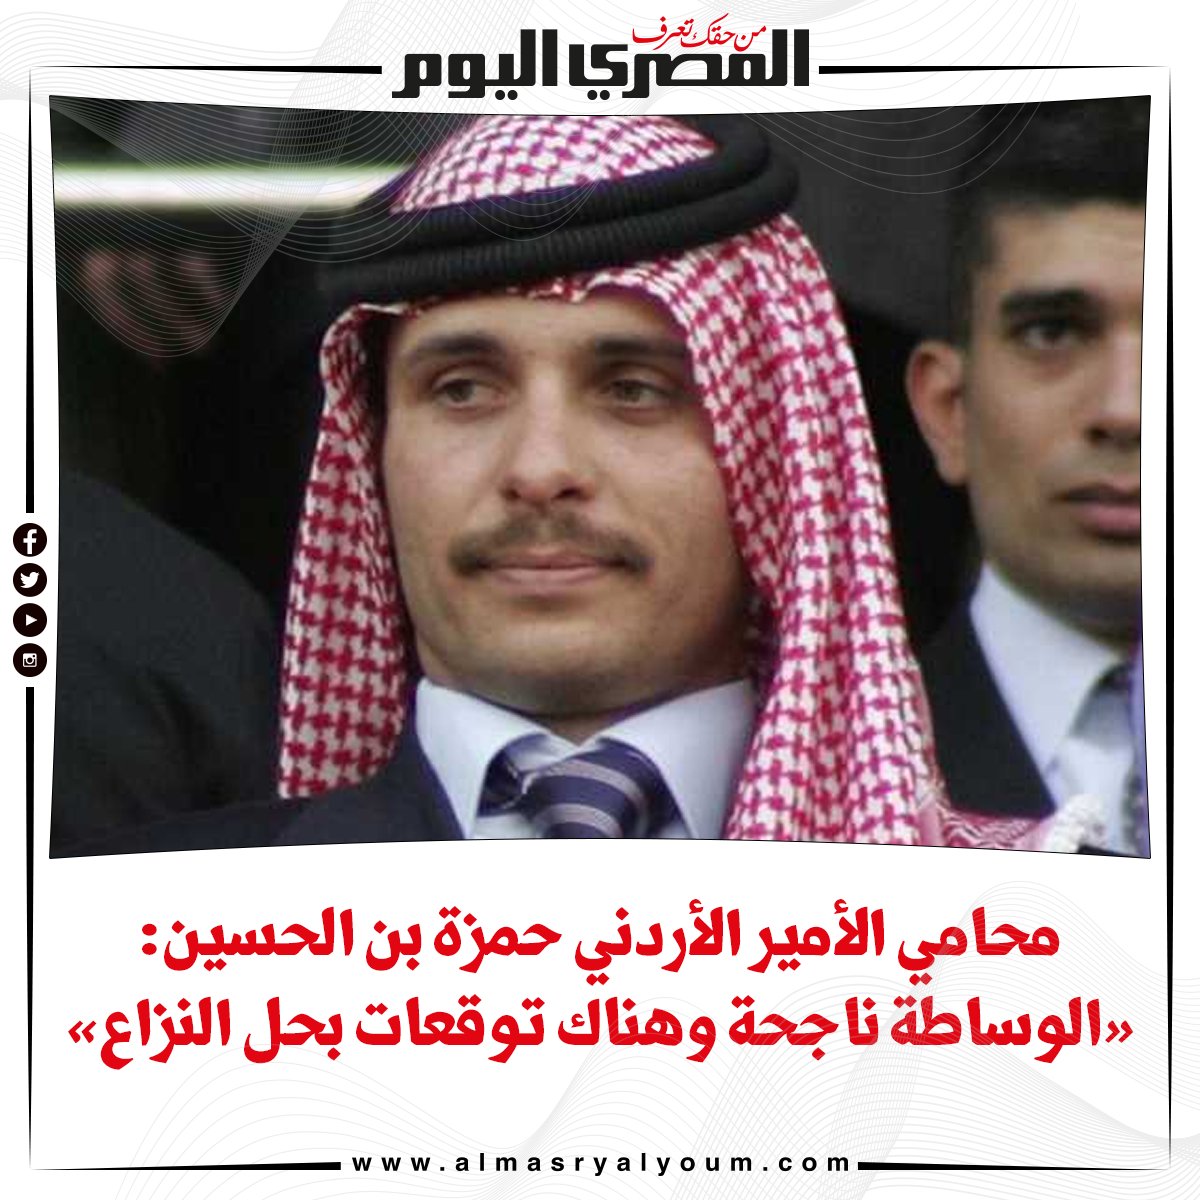 محامي الأمير الأردني حمزة بن الحسين «الوساطة ناجحة وهناك توقعات بحل النزاع»